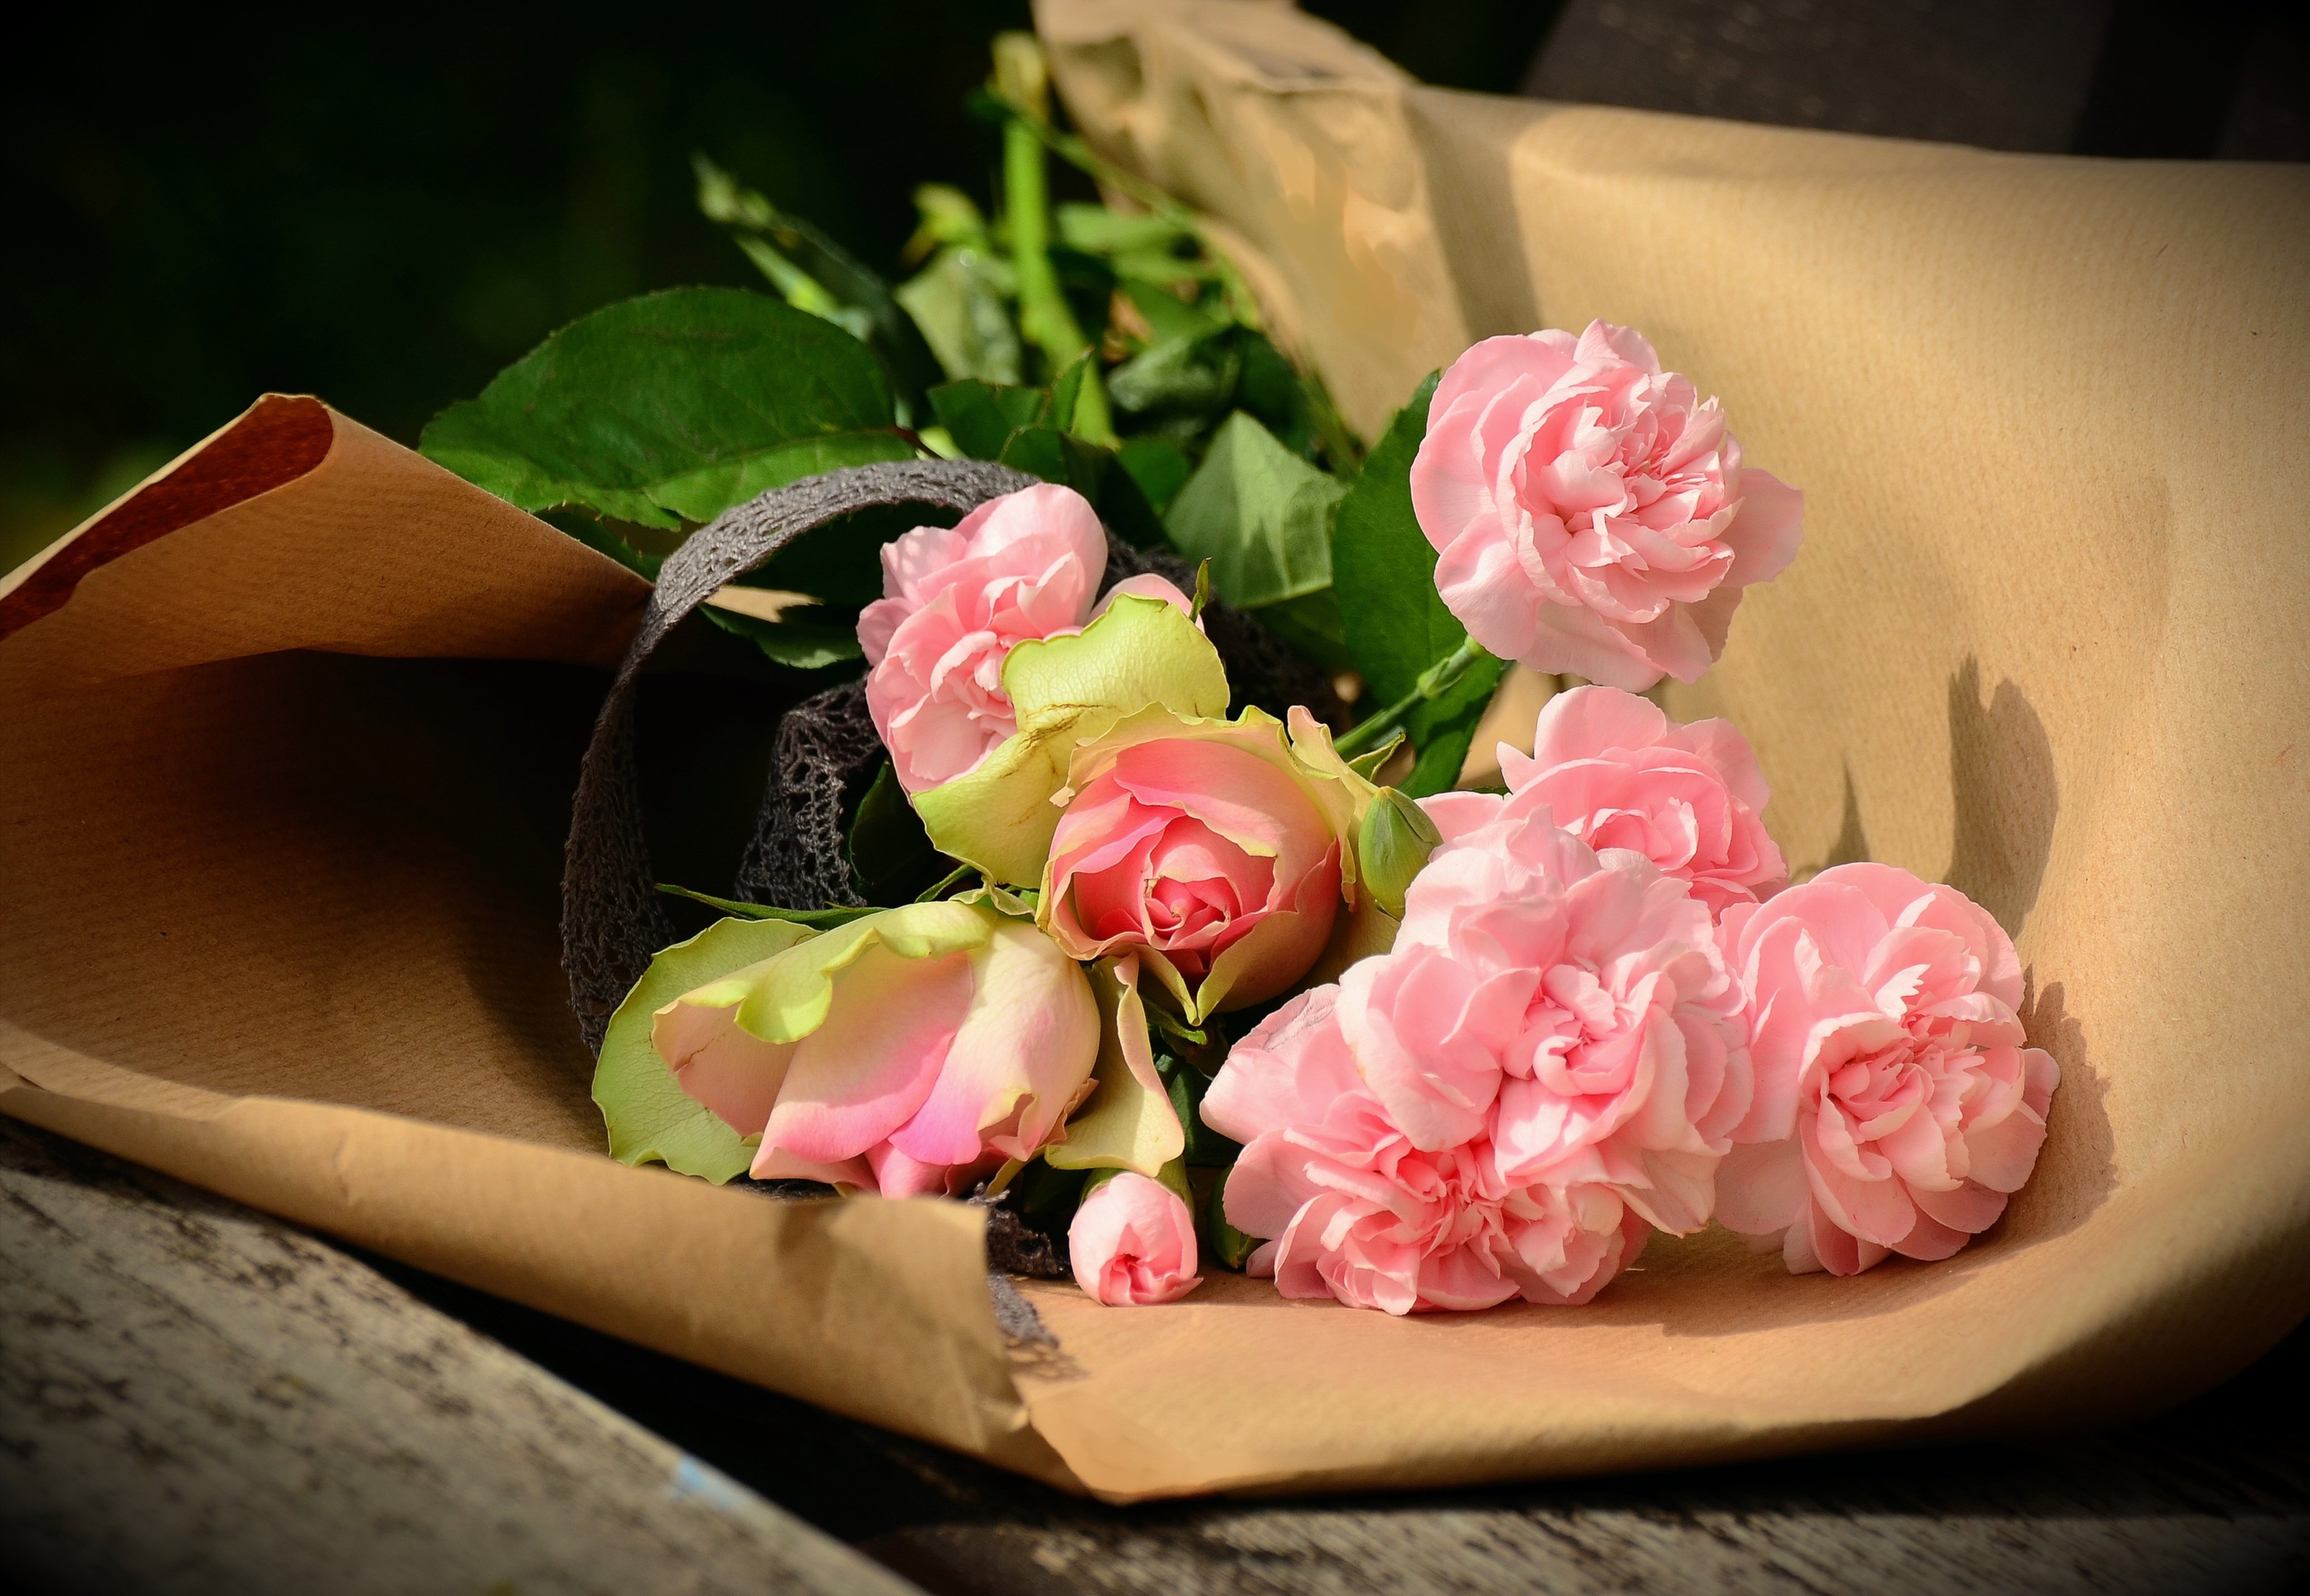 Картинка с цветами на столе. Нежные розы. Романтические цветы. Романтичный букет цветов. Красивый букет на столе.